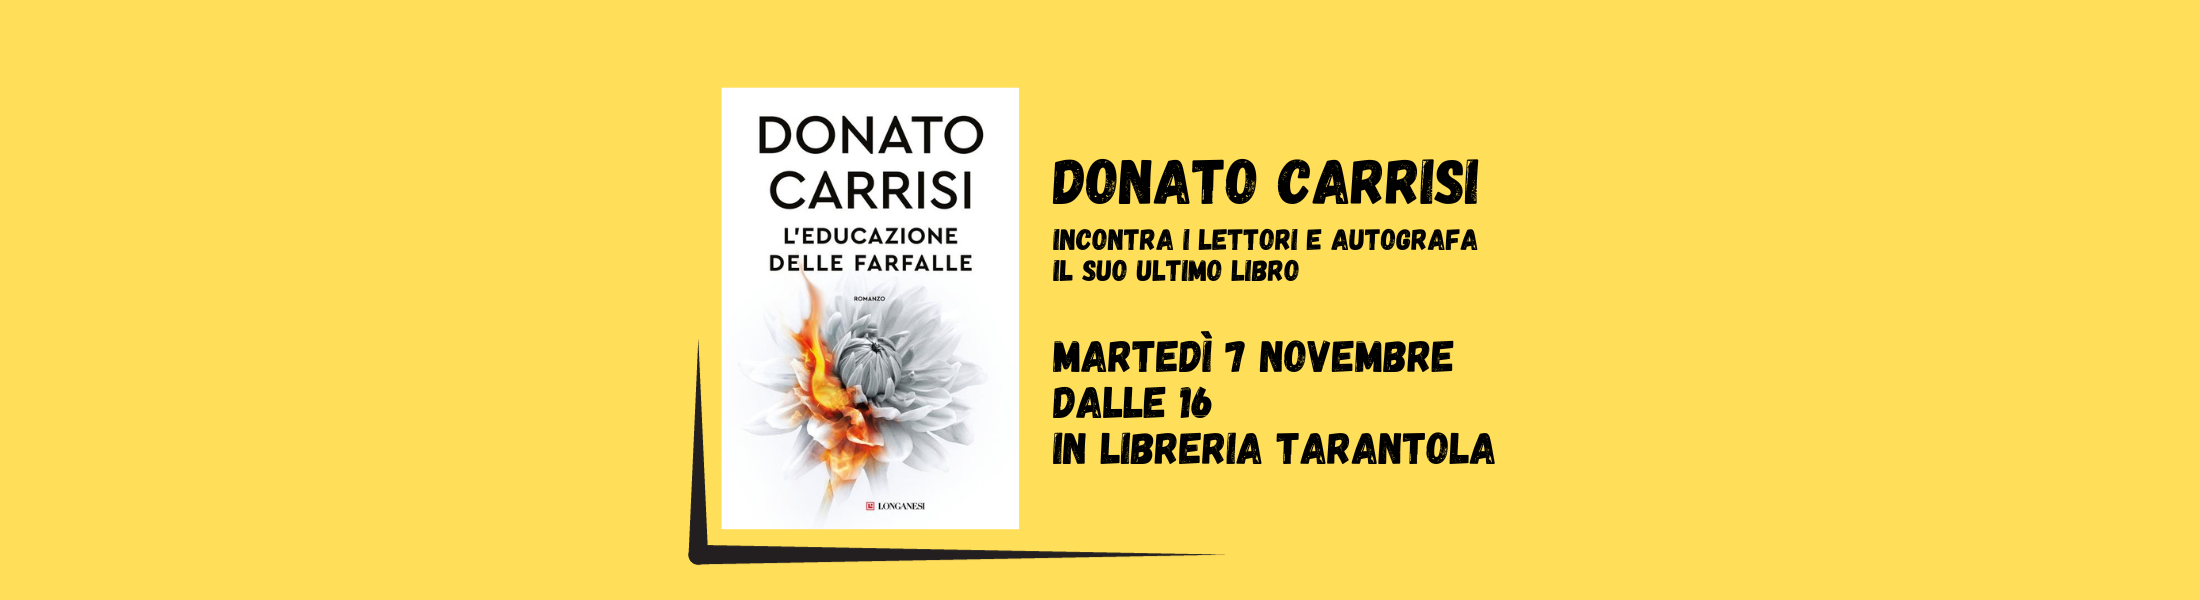 libro giallo L'educazione delle farfalle di Donato Carrisi 